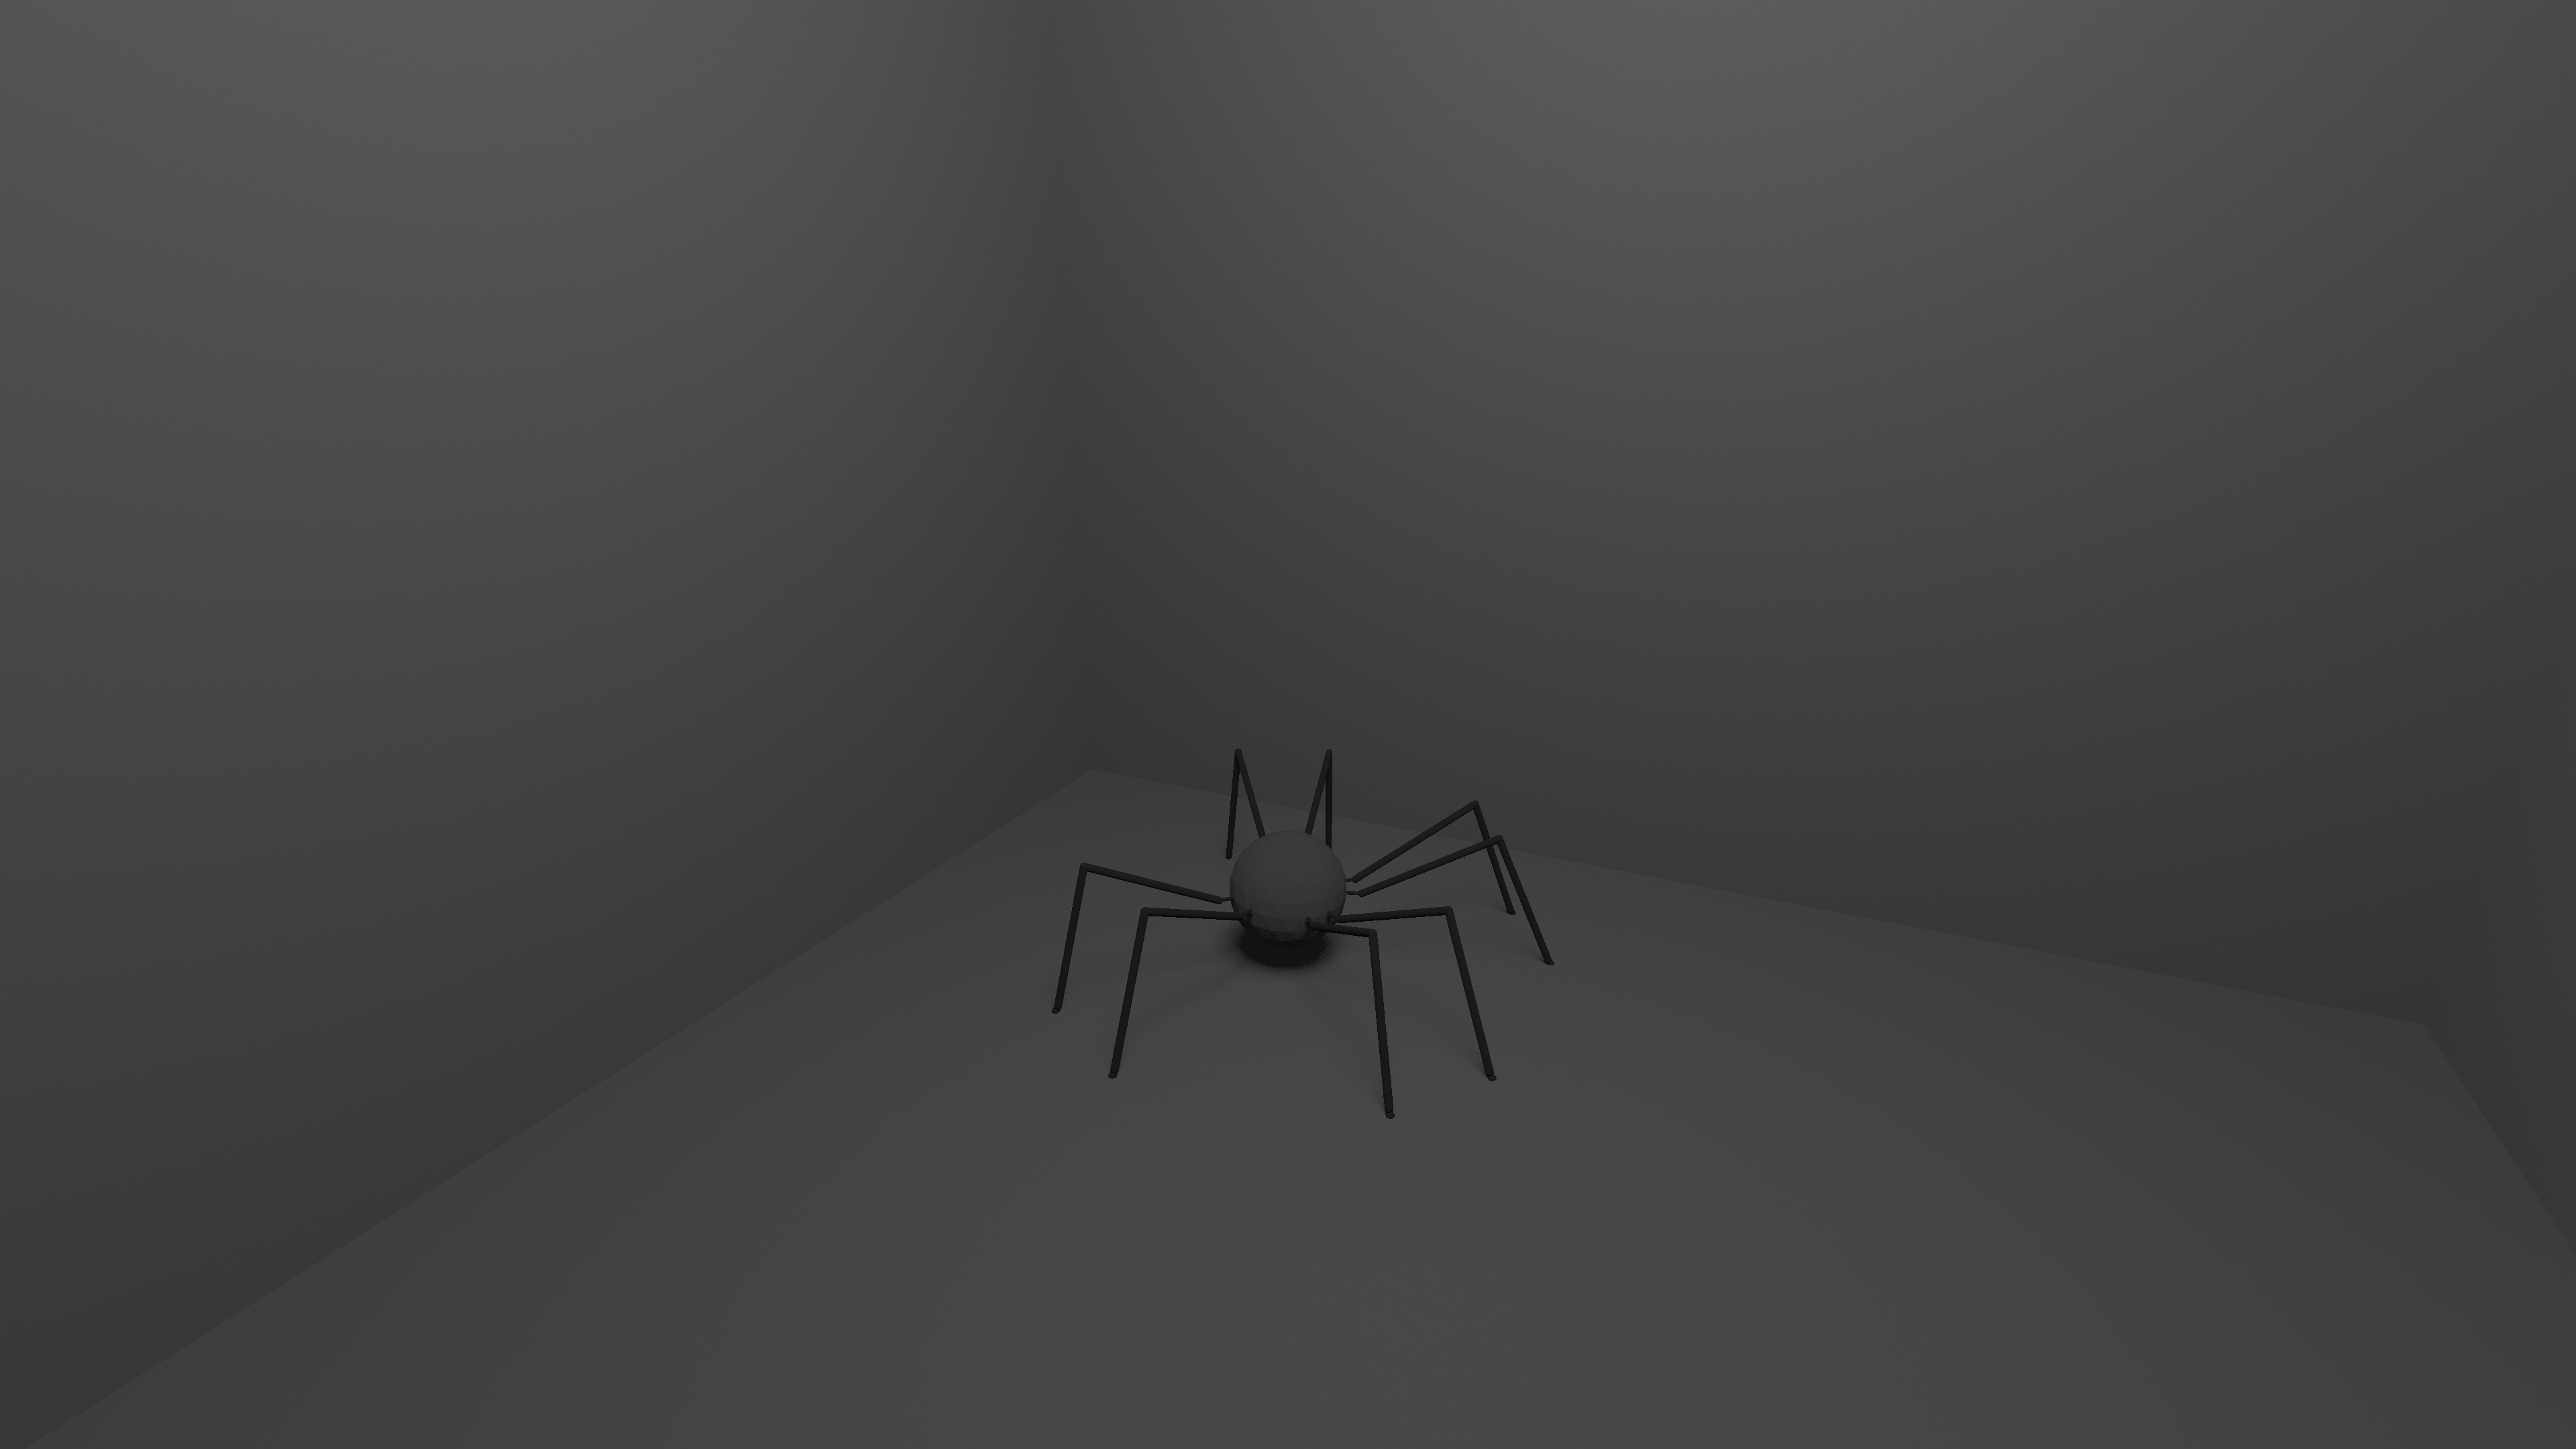 spider 1